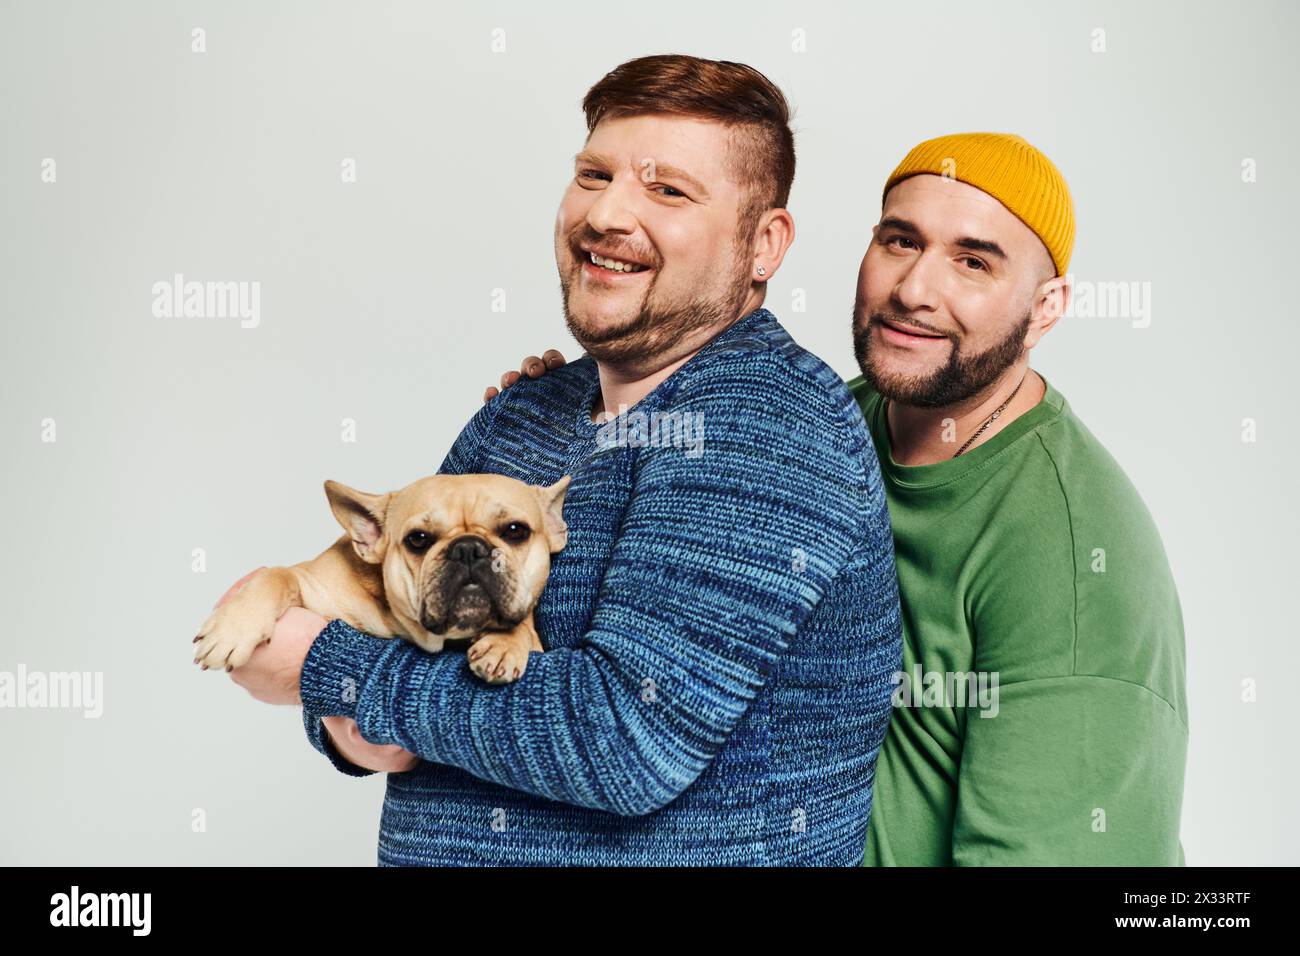 Zwei Männer halten liebevoll einen kleinen Hund in den Armen und genießen die gemeinsame Zeit. Stockfoto